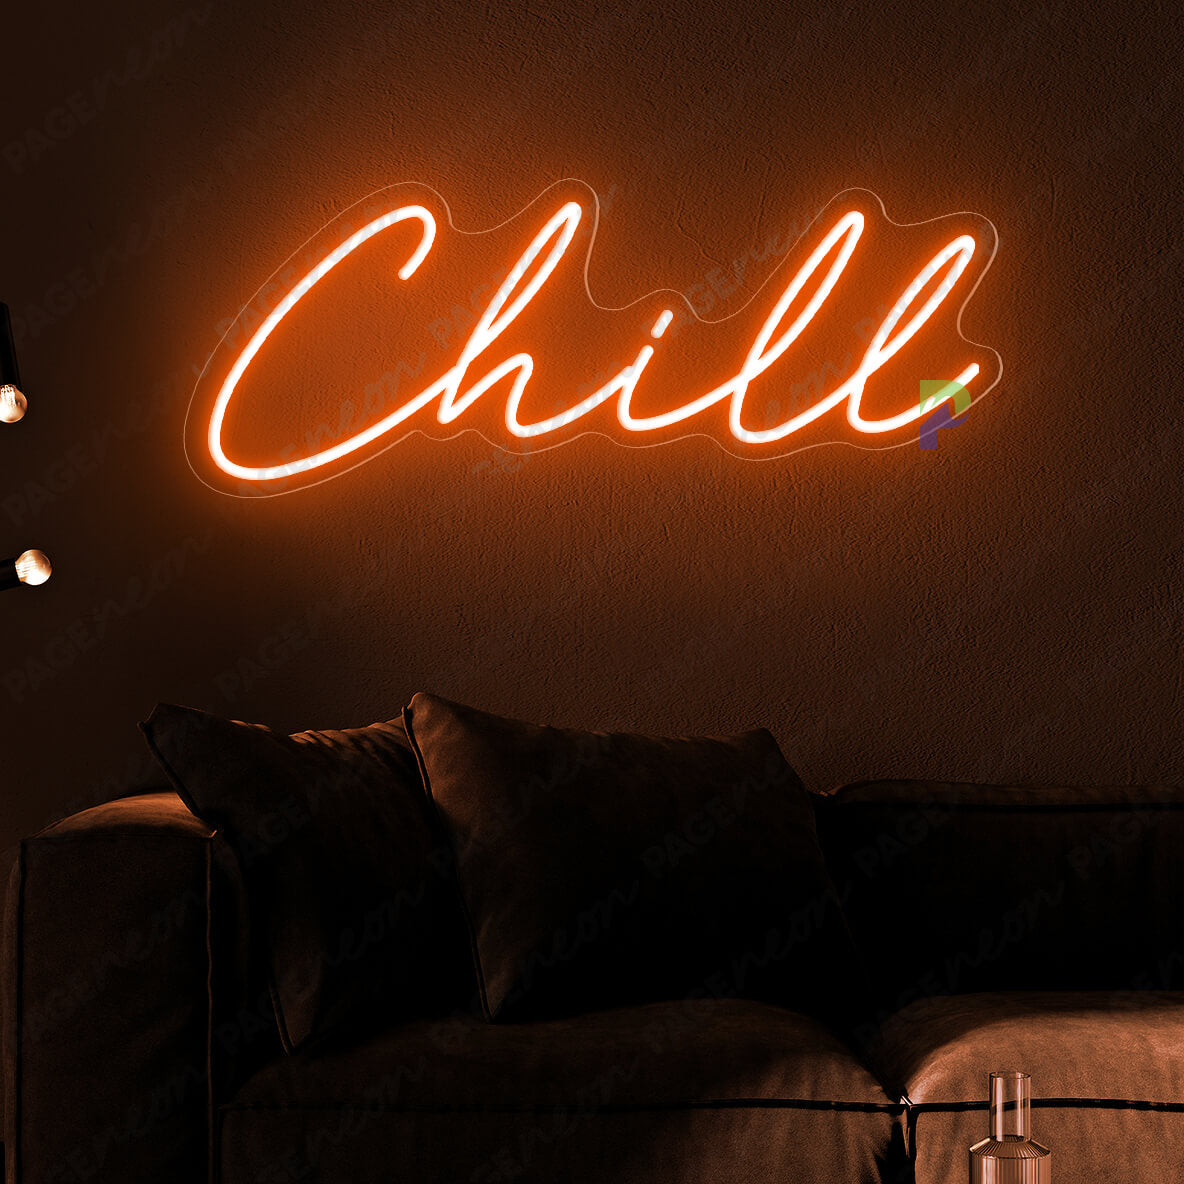 Chill Neon Sign Inspirational Led Light Orange